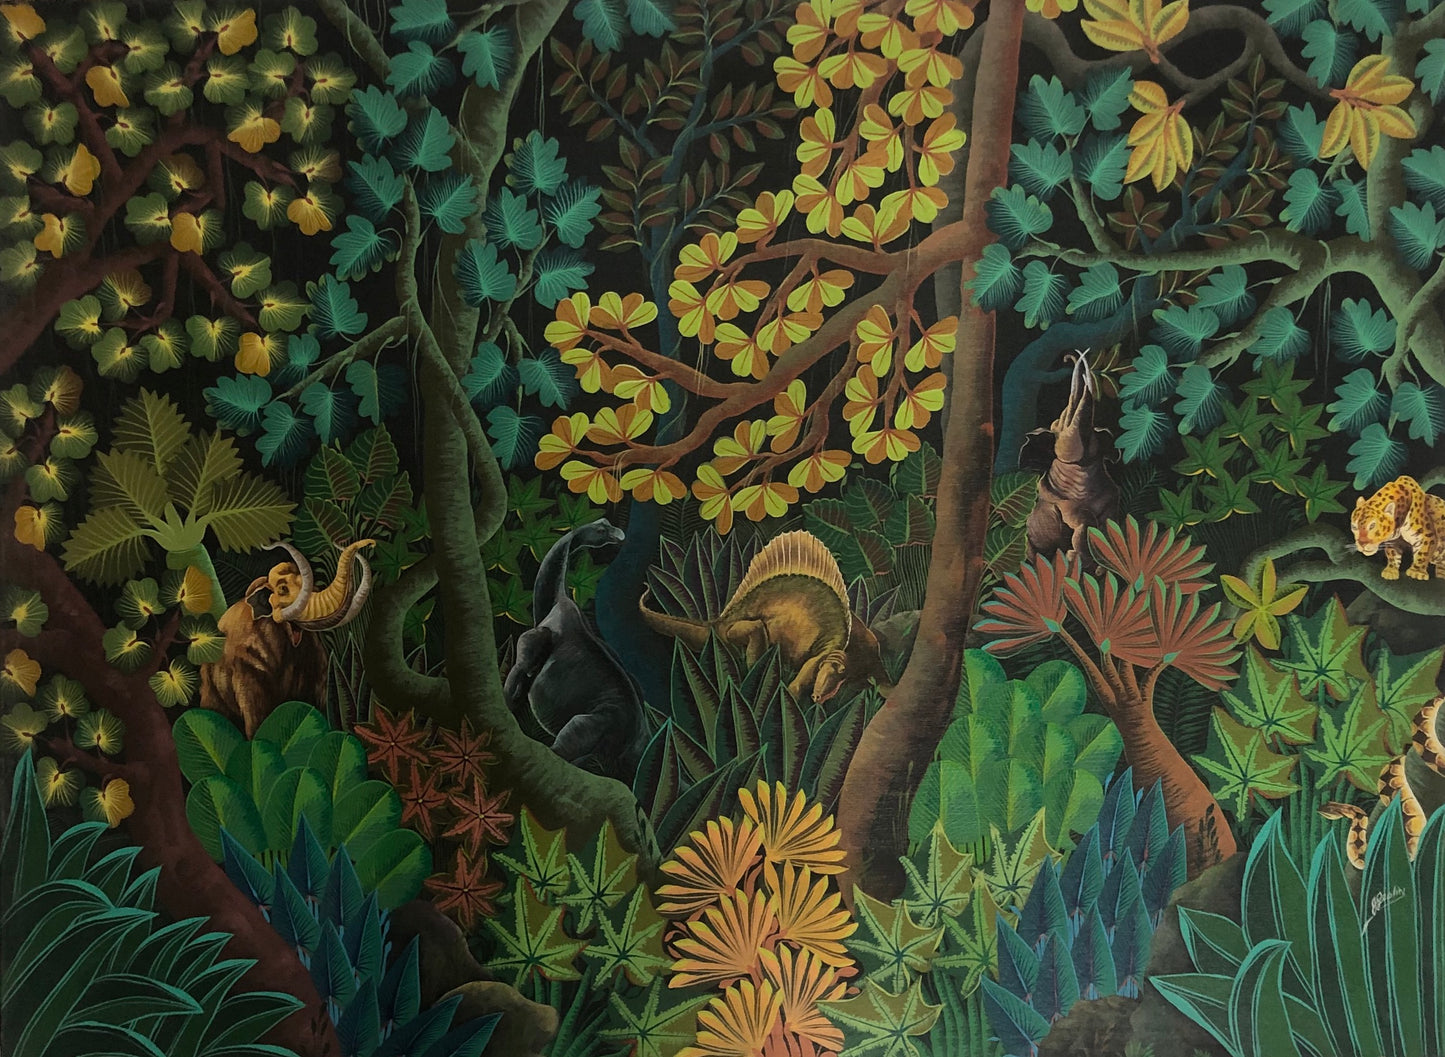 Jacques Geslin 36"x48" Huile de forêt tropicale sur toile #96-3-96-HA